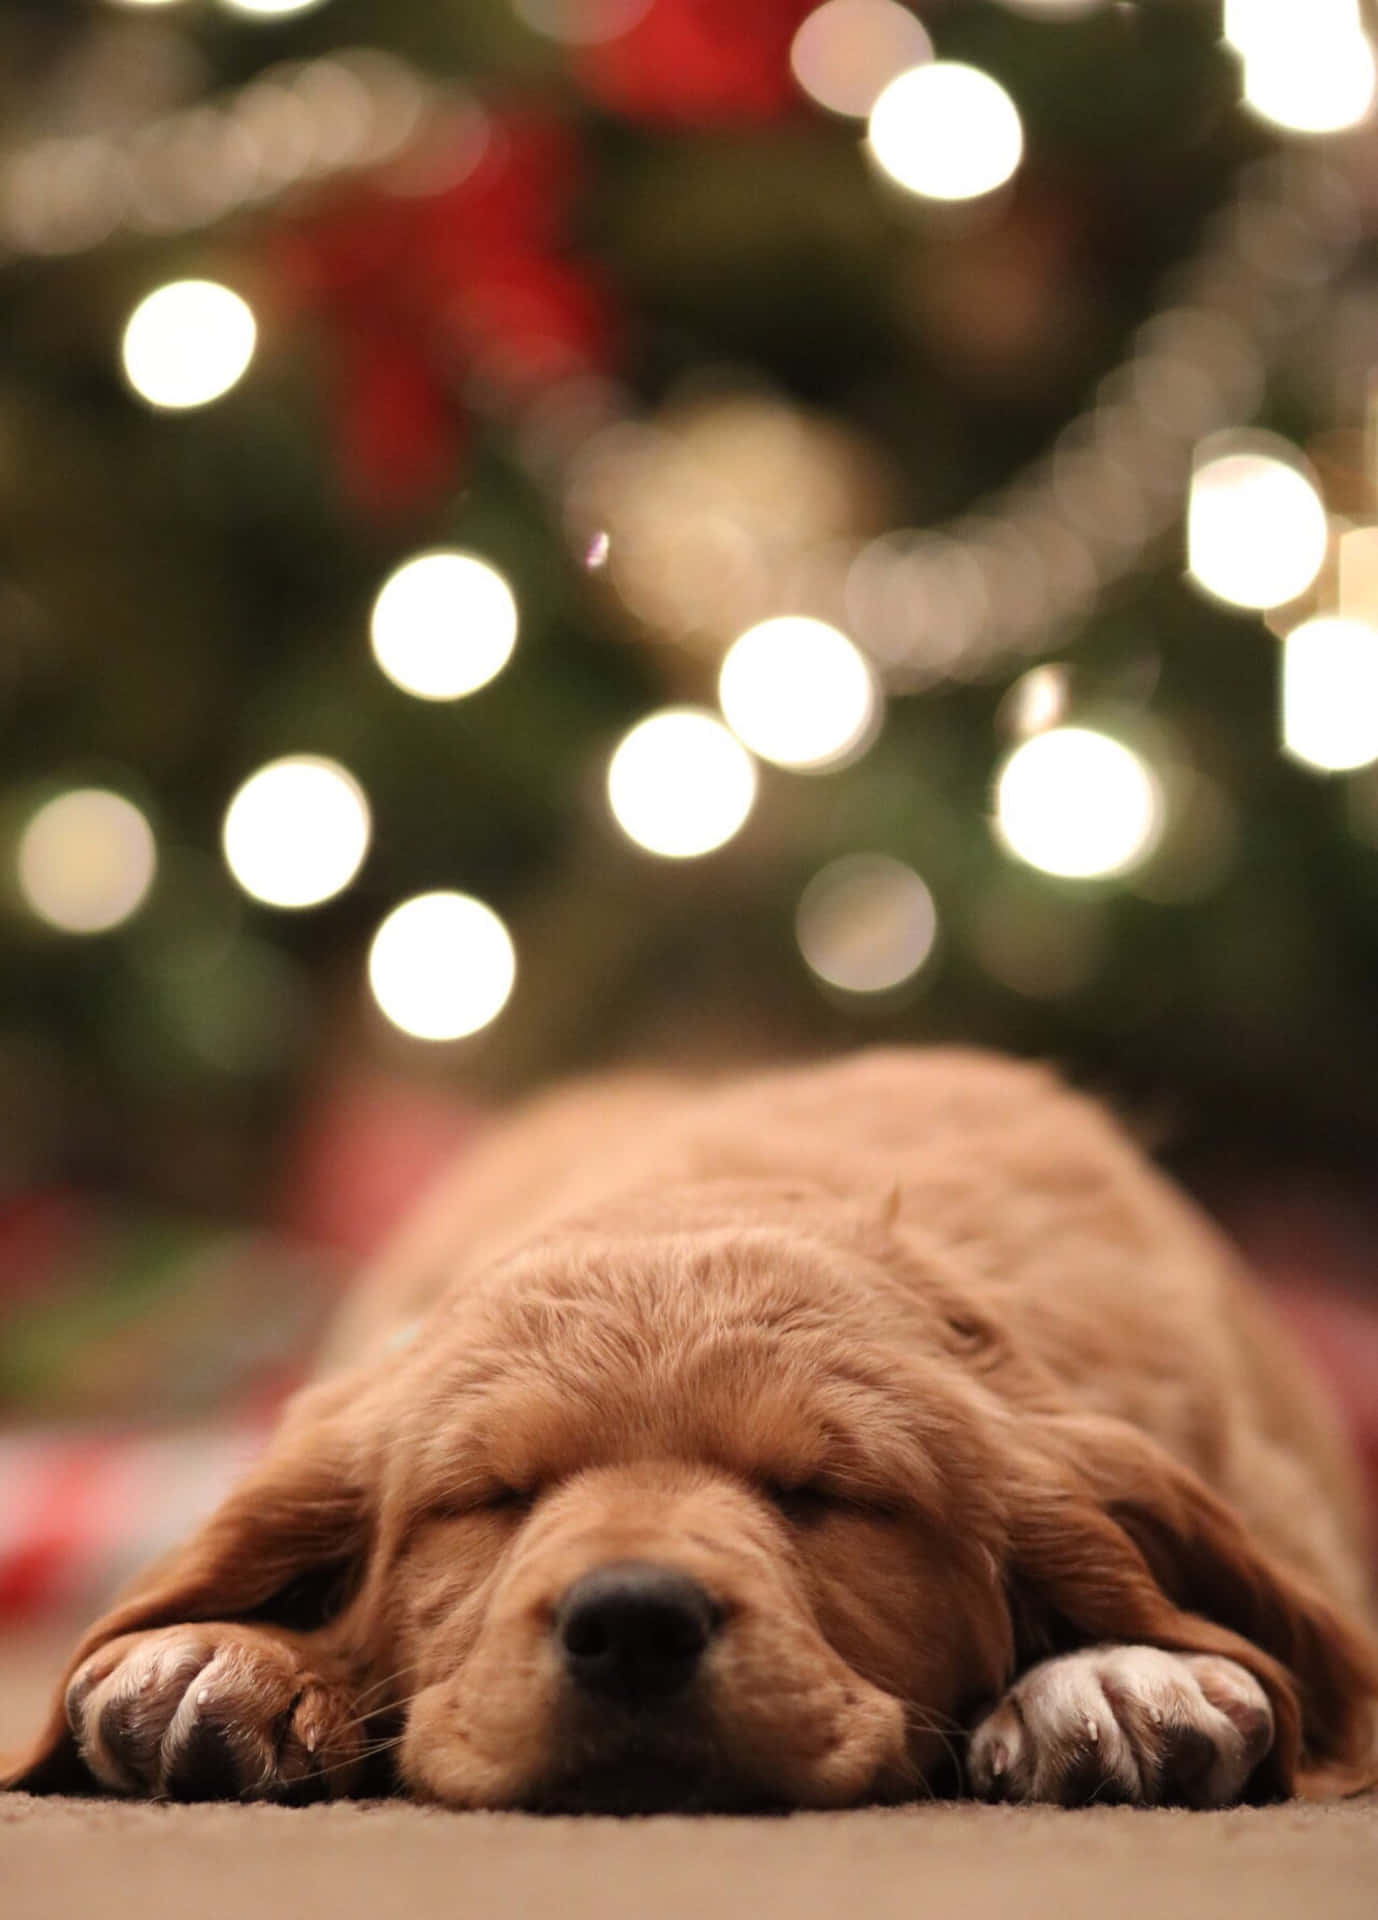 Sleeping Christmas Dog